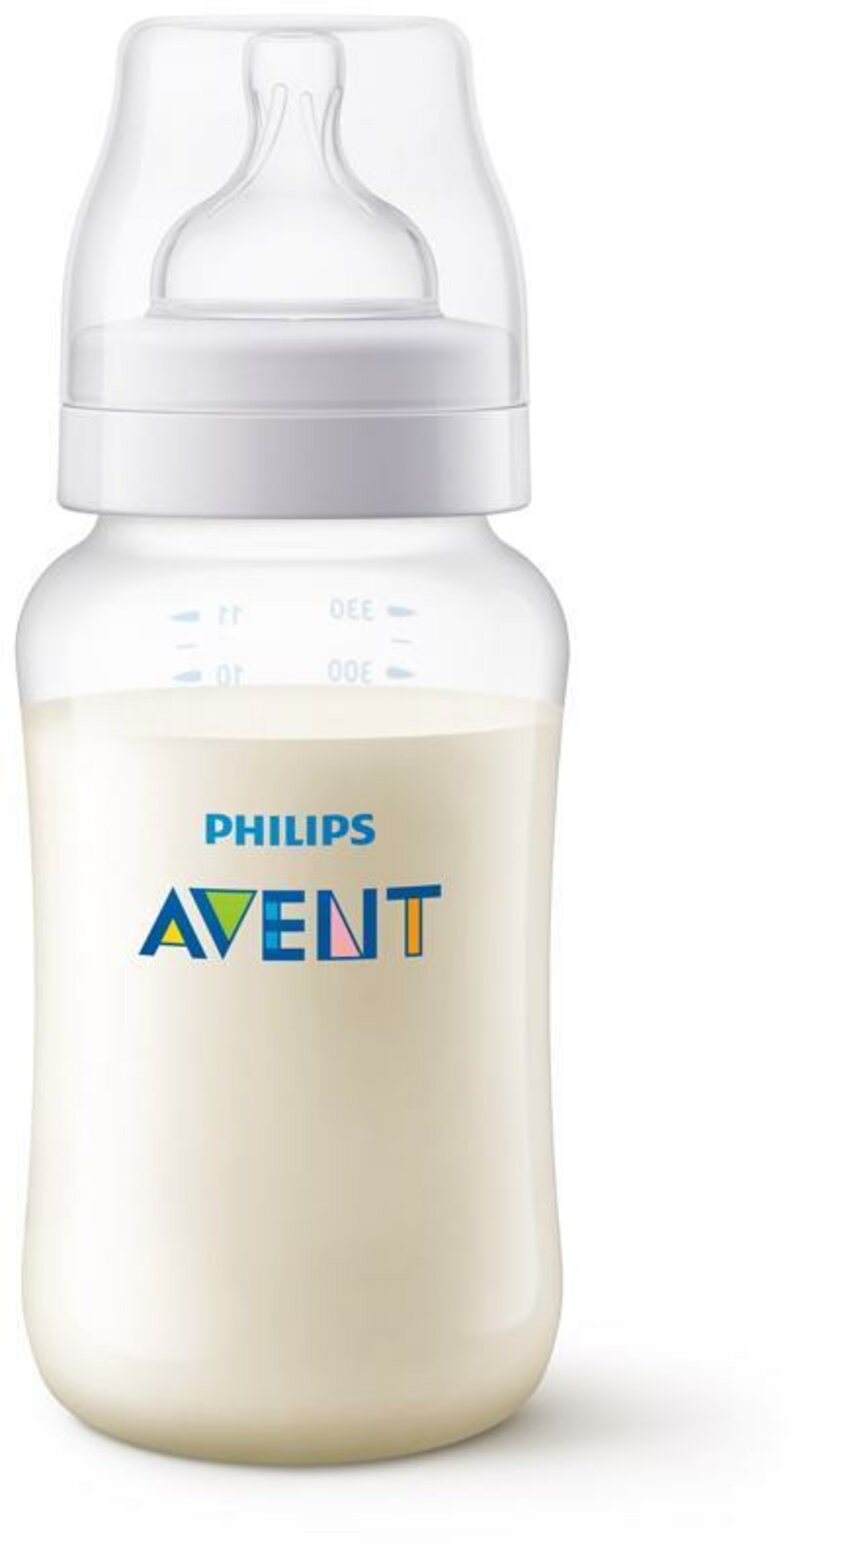 Philips AVENT Fľaša 330 ml Antikolik | Predeti.sk